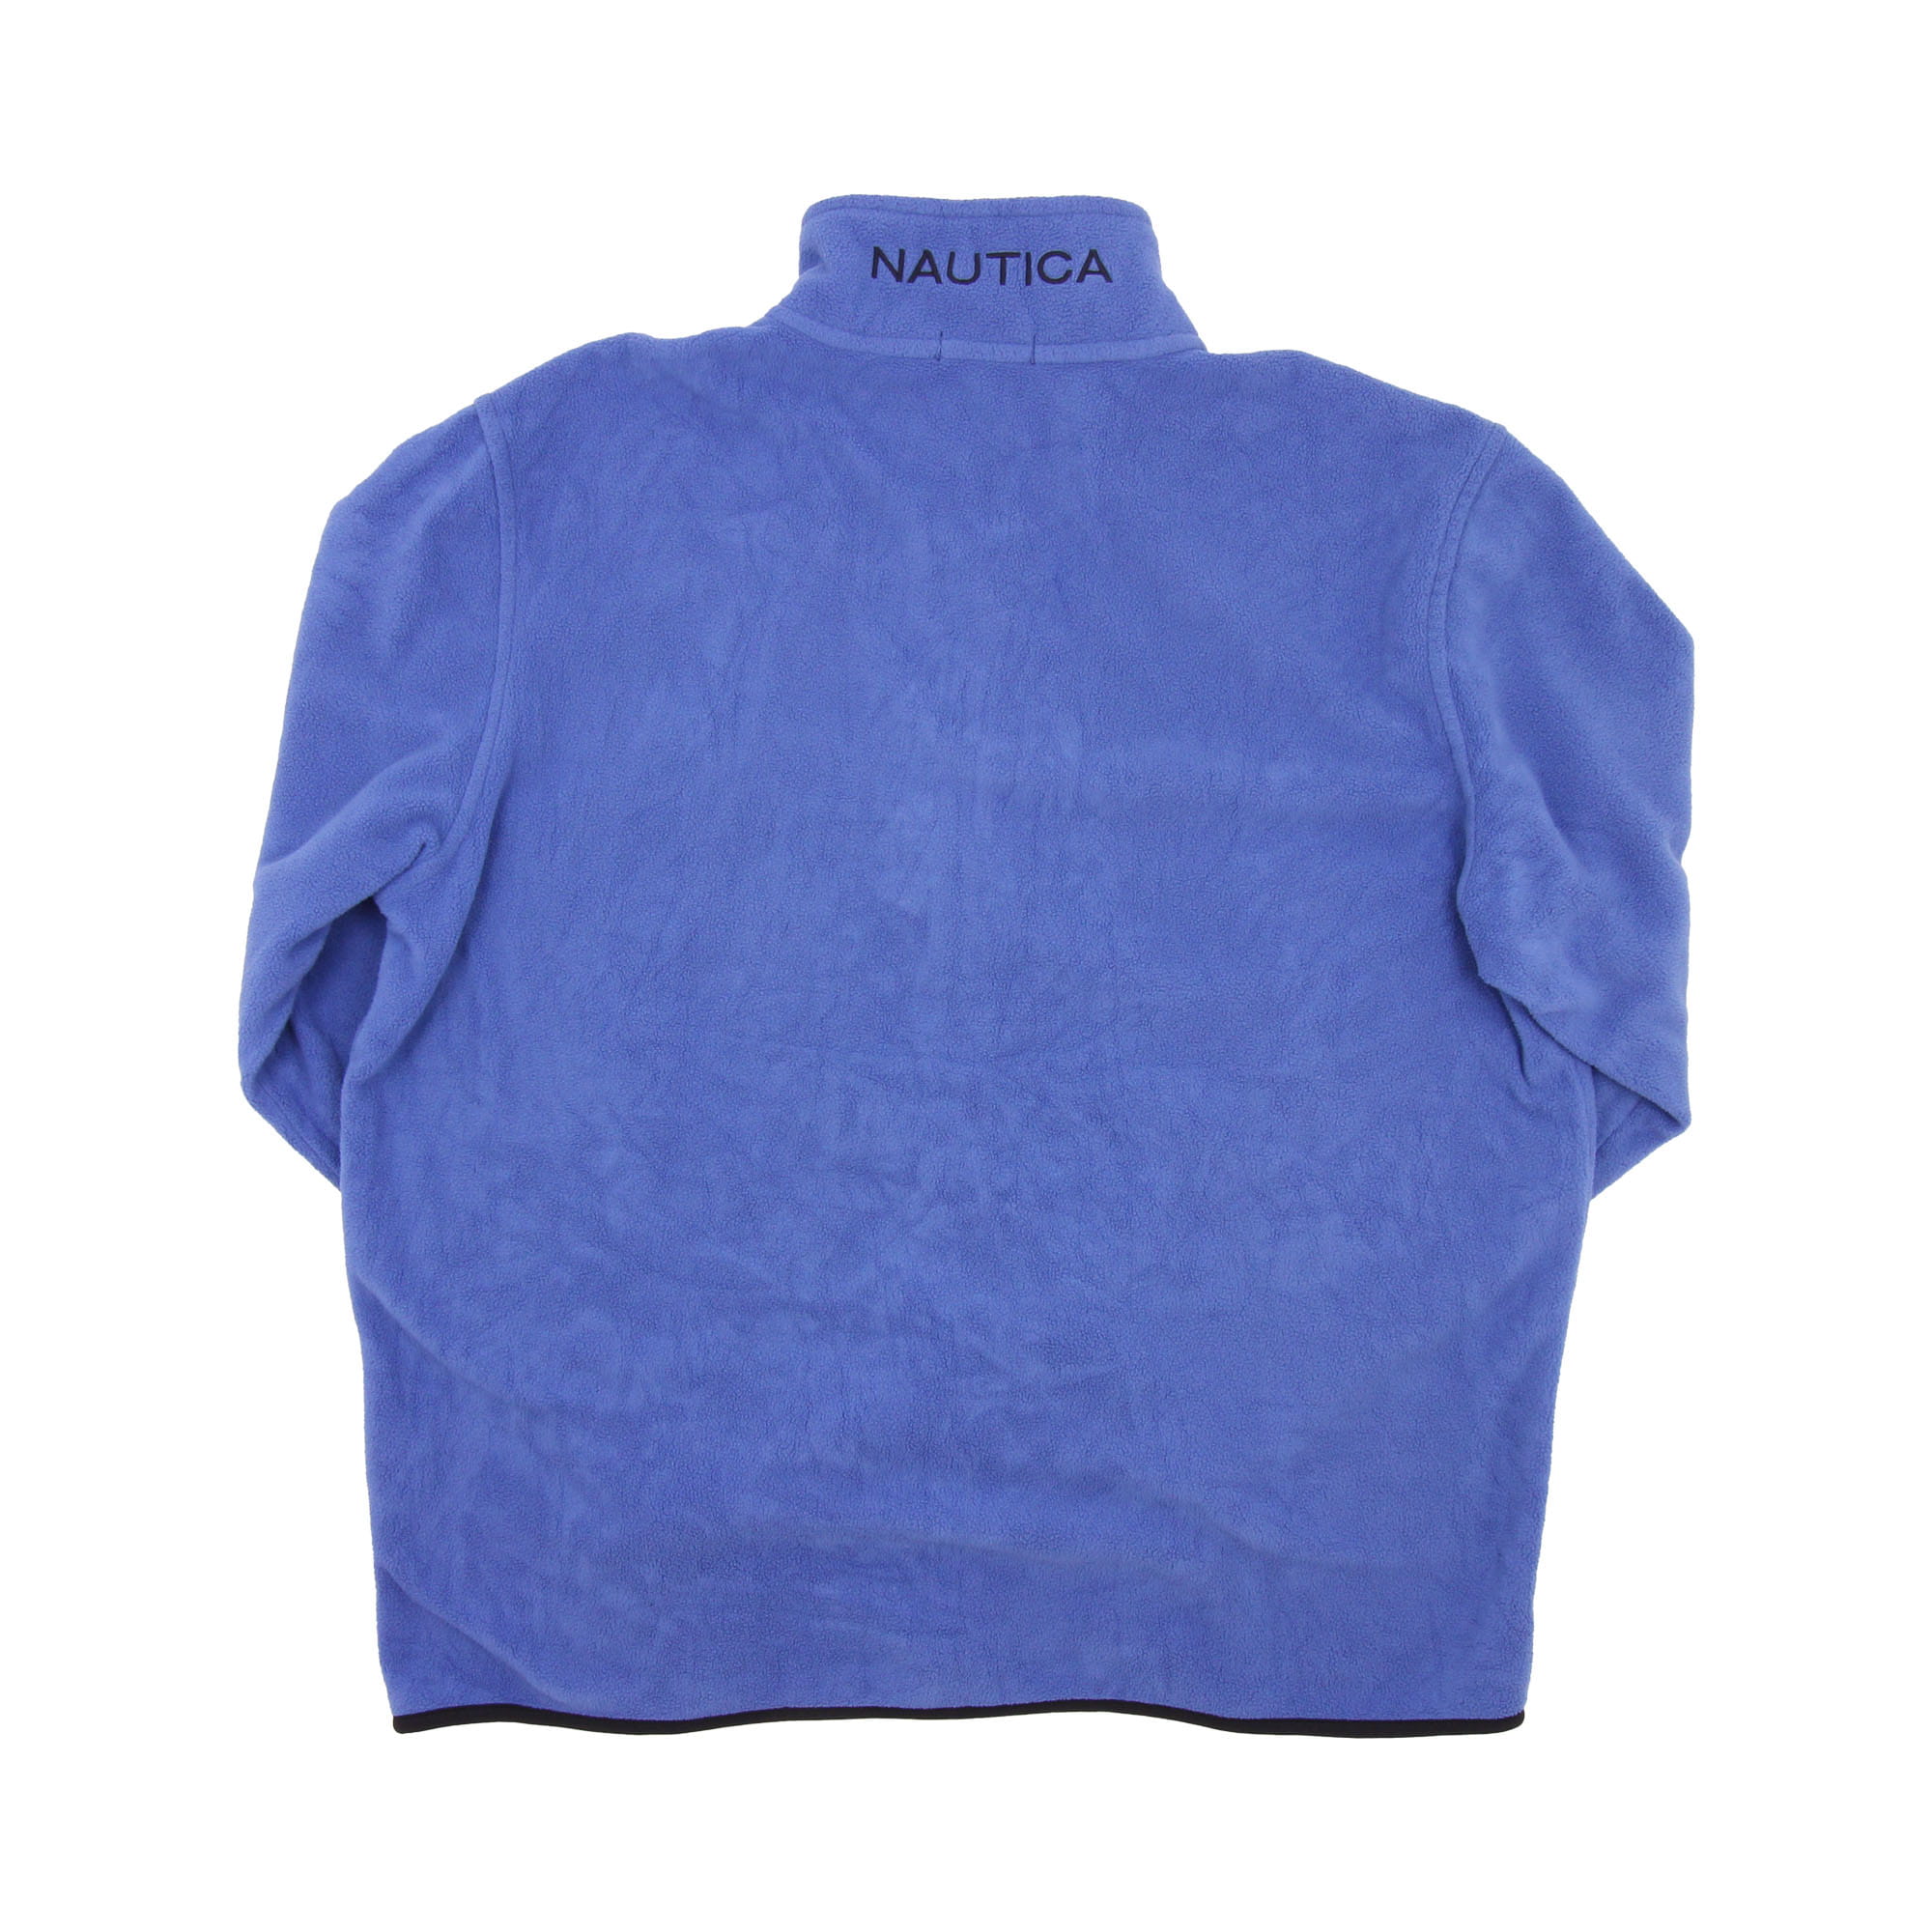 Nautica Fleece Blue -  XL